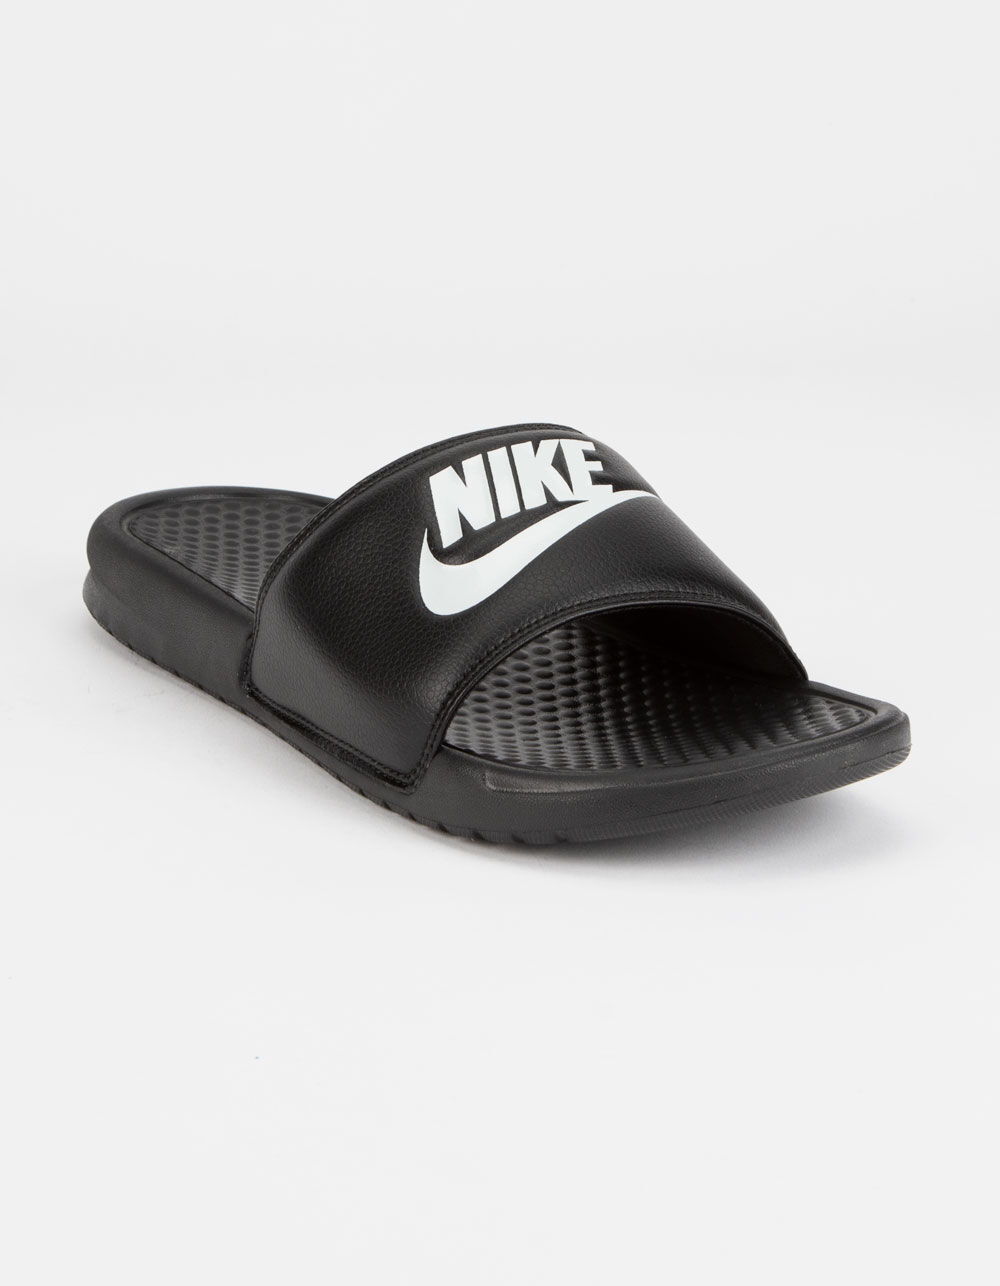 All Black Nike Slides Men | lupon.gov.ph